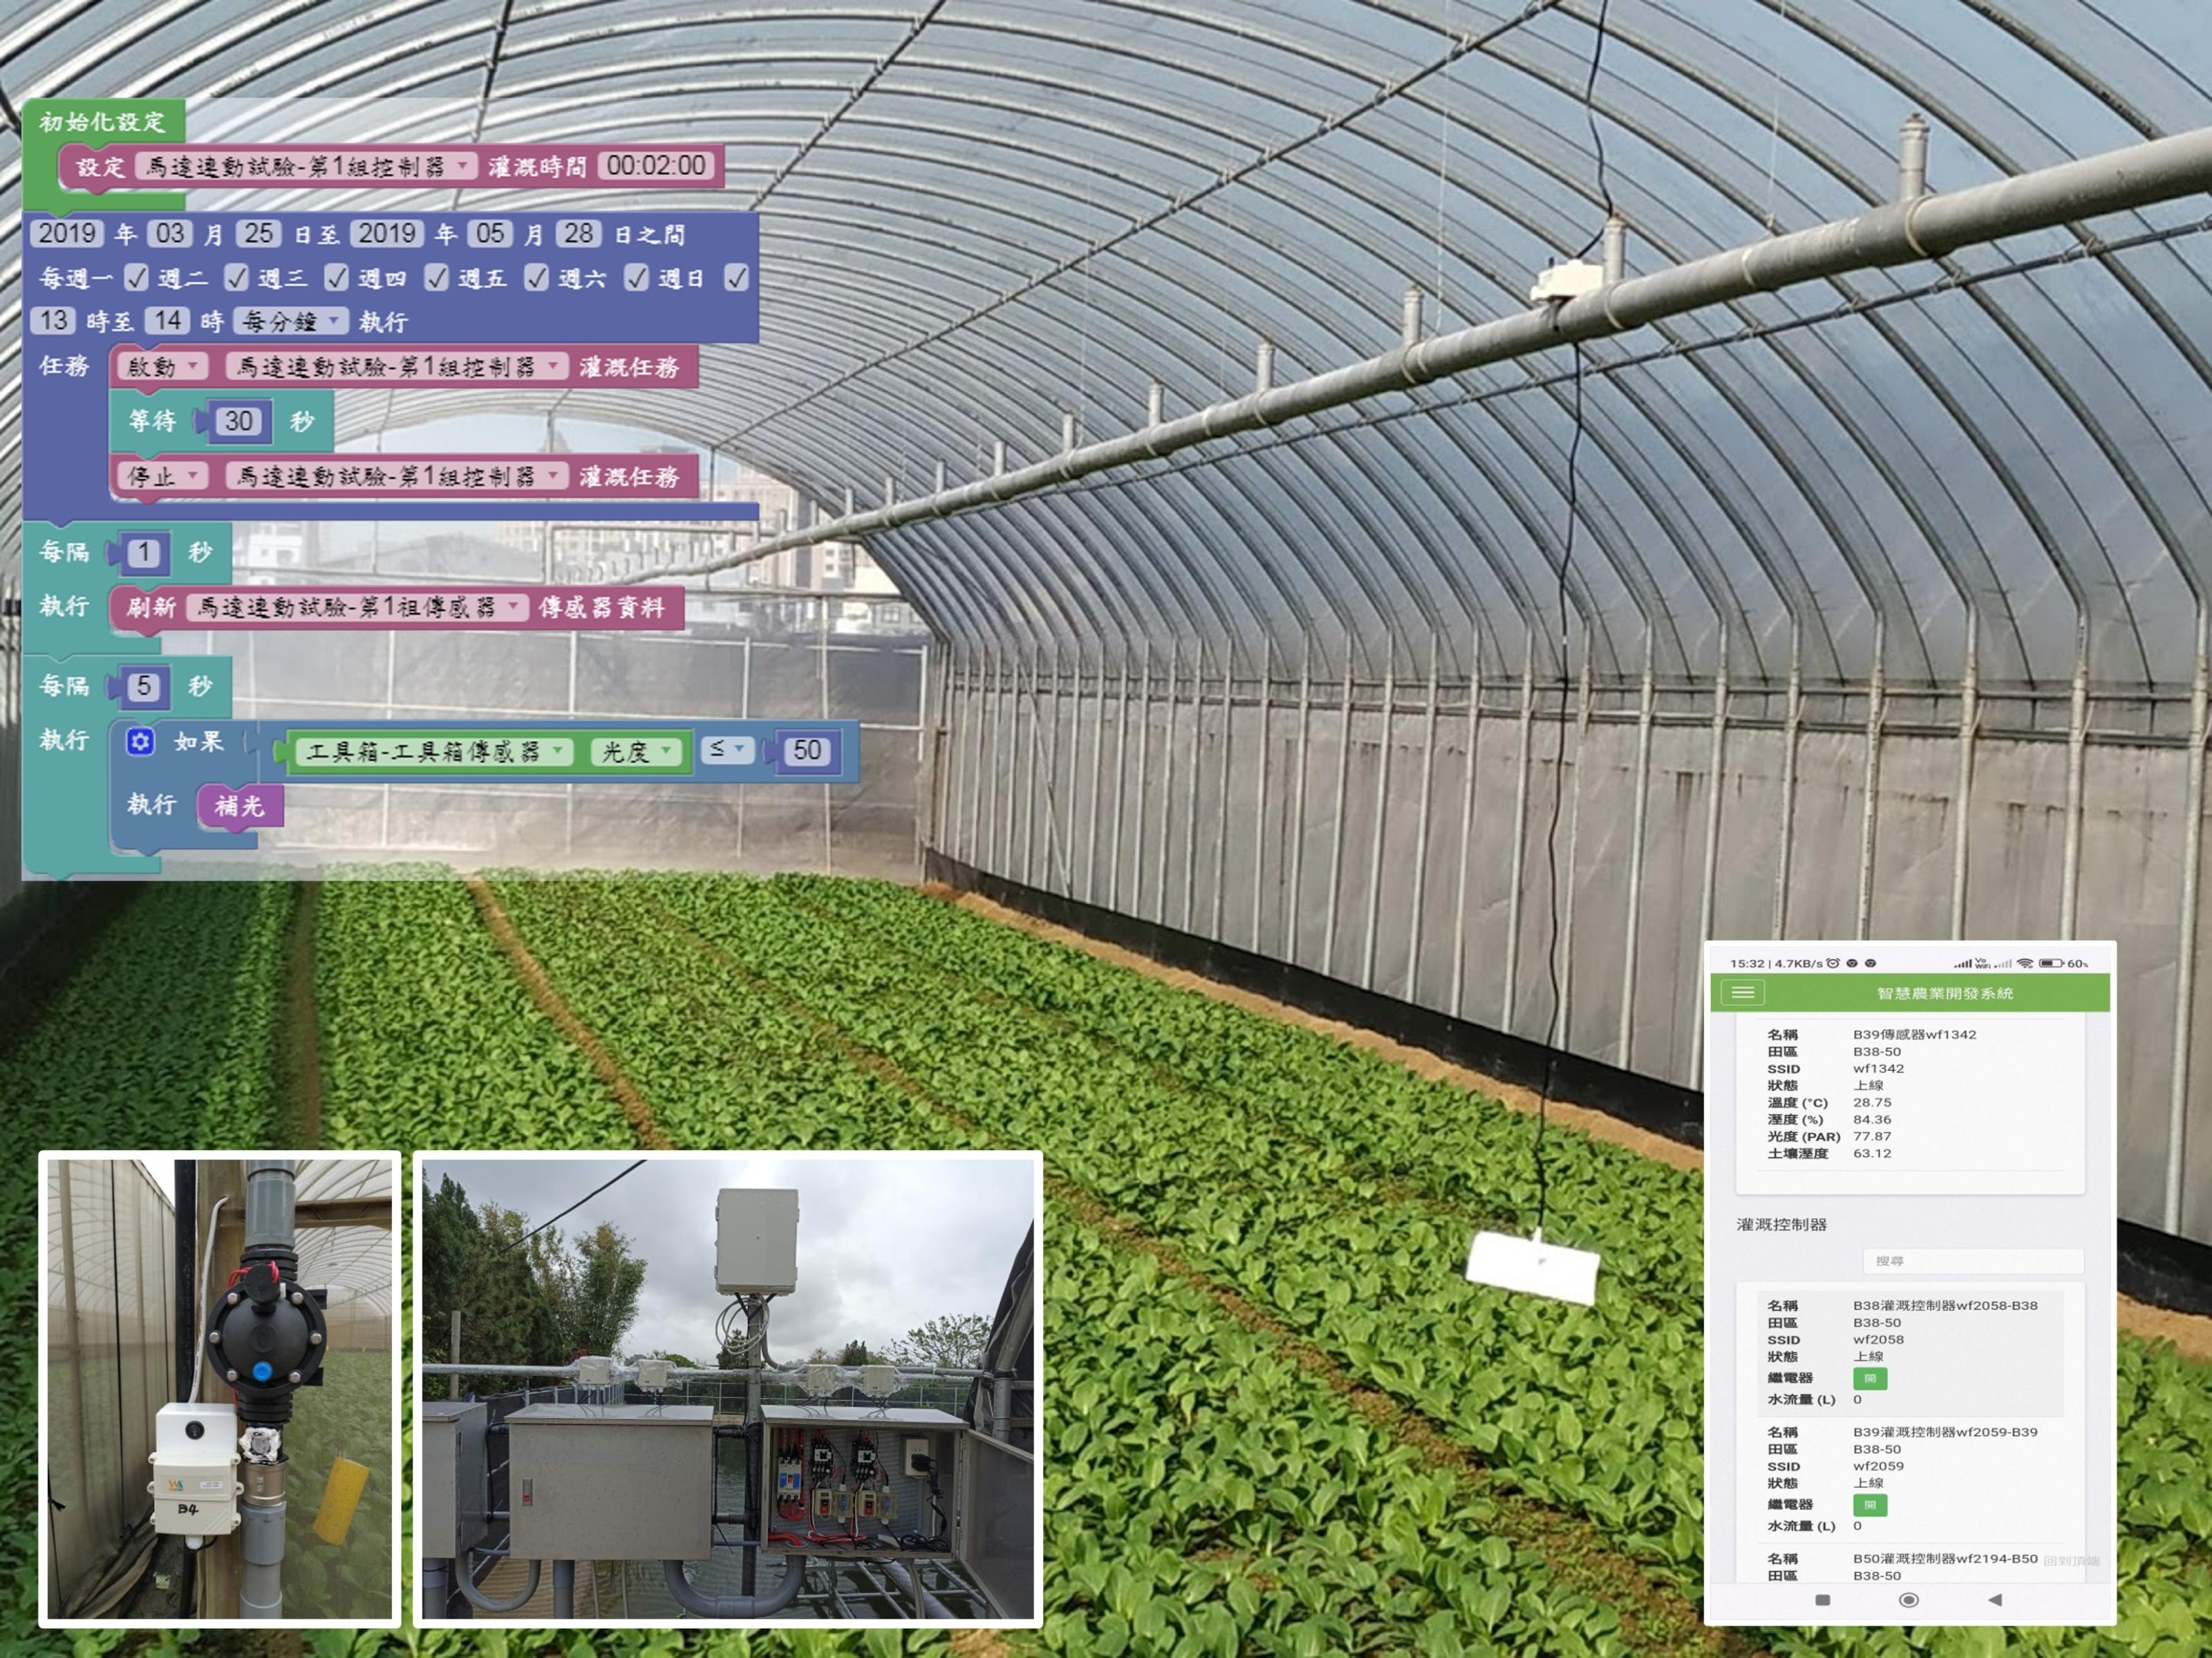 觀摩會展示設施葉菜智慧灌溉系統及操作